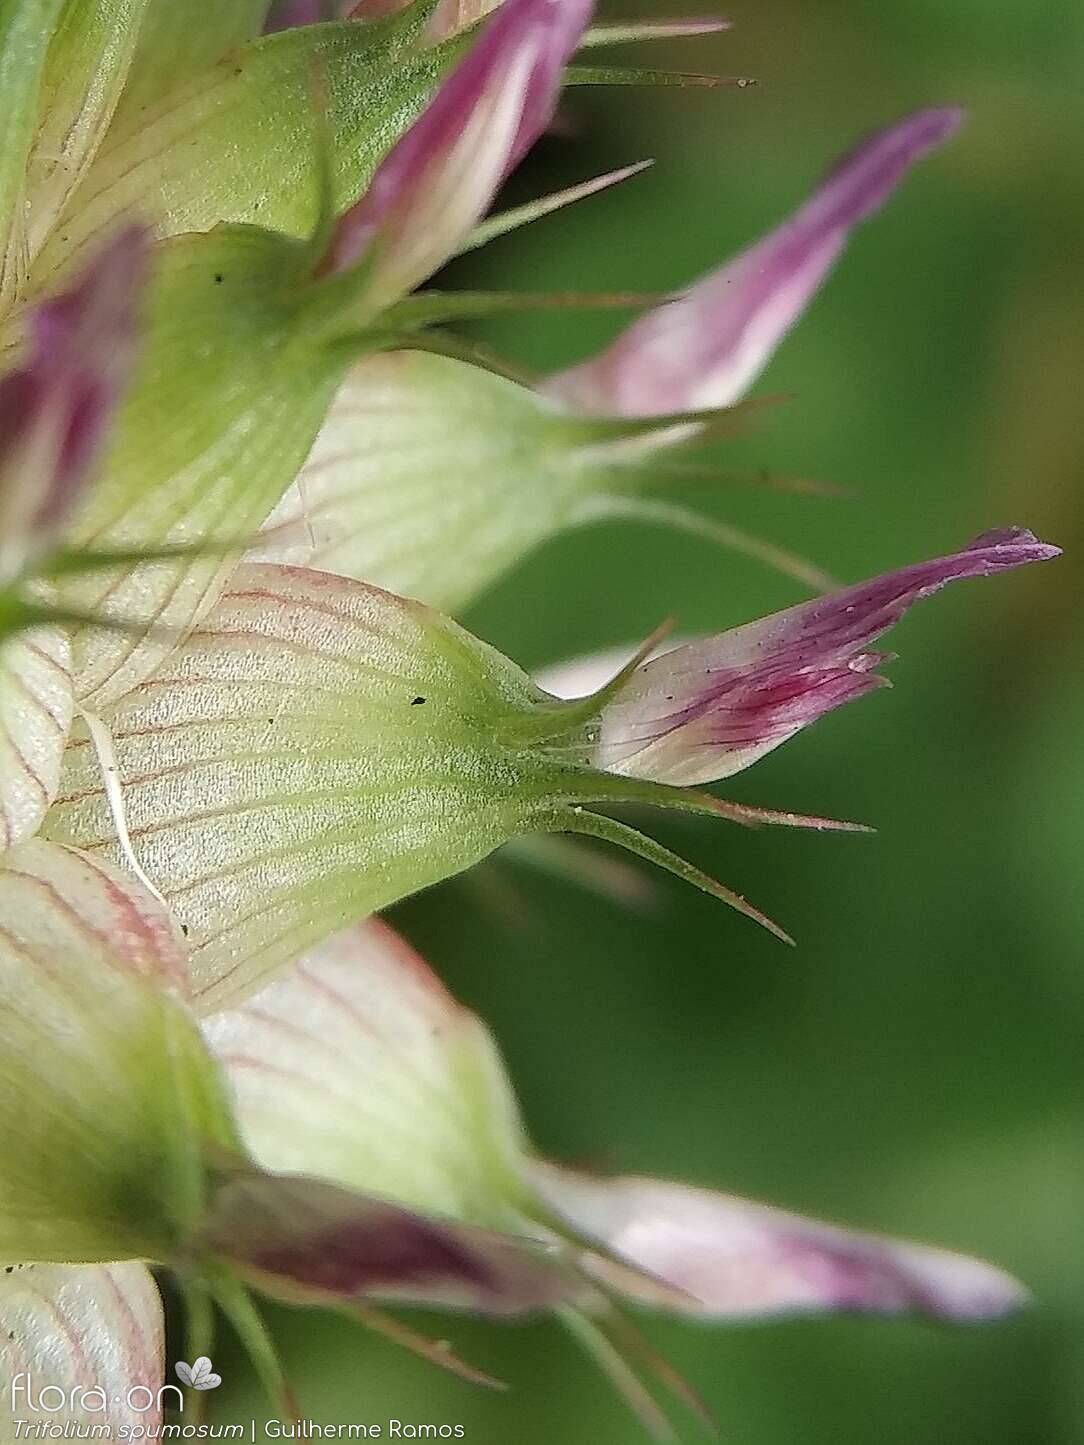 Trifolium spumosum - Flor (close-up) | Guilherme Ramos; CC BY-NC 4.0